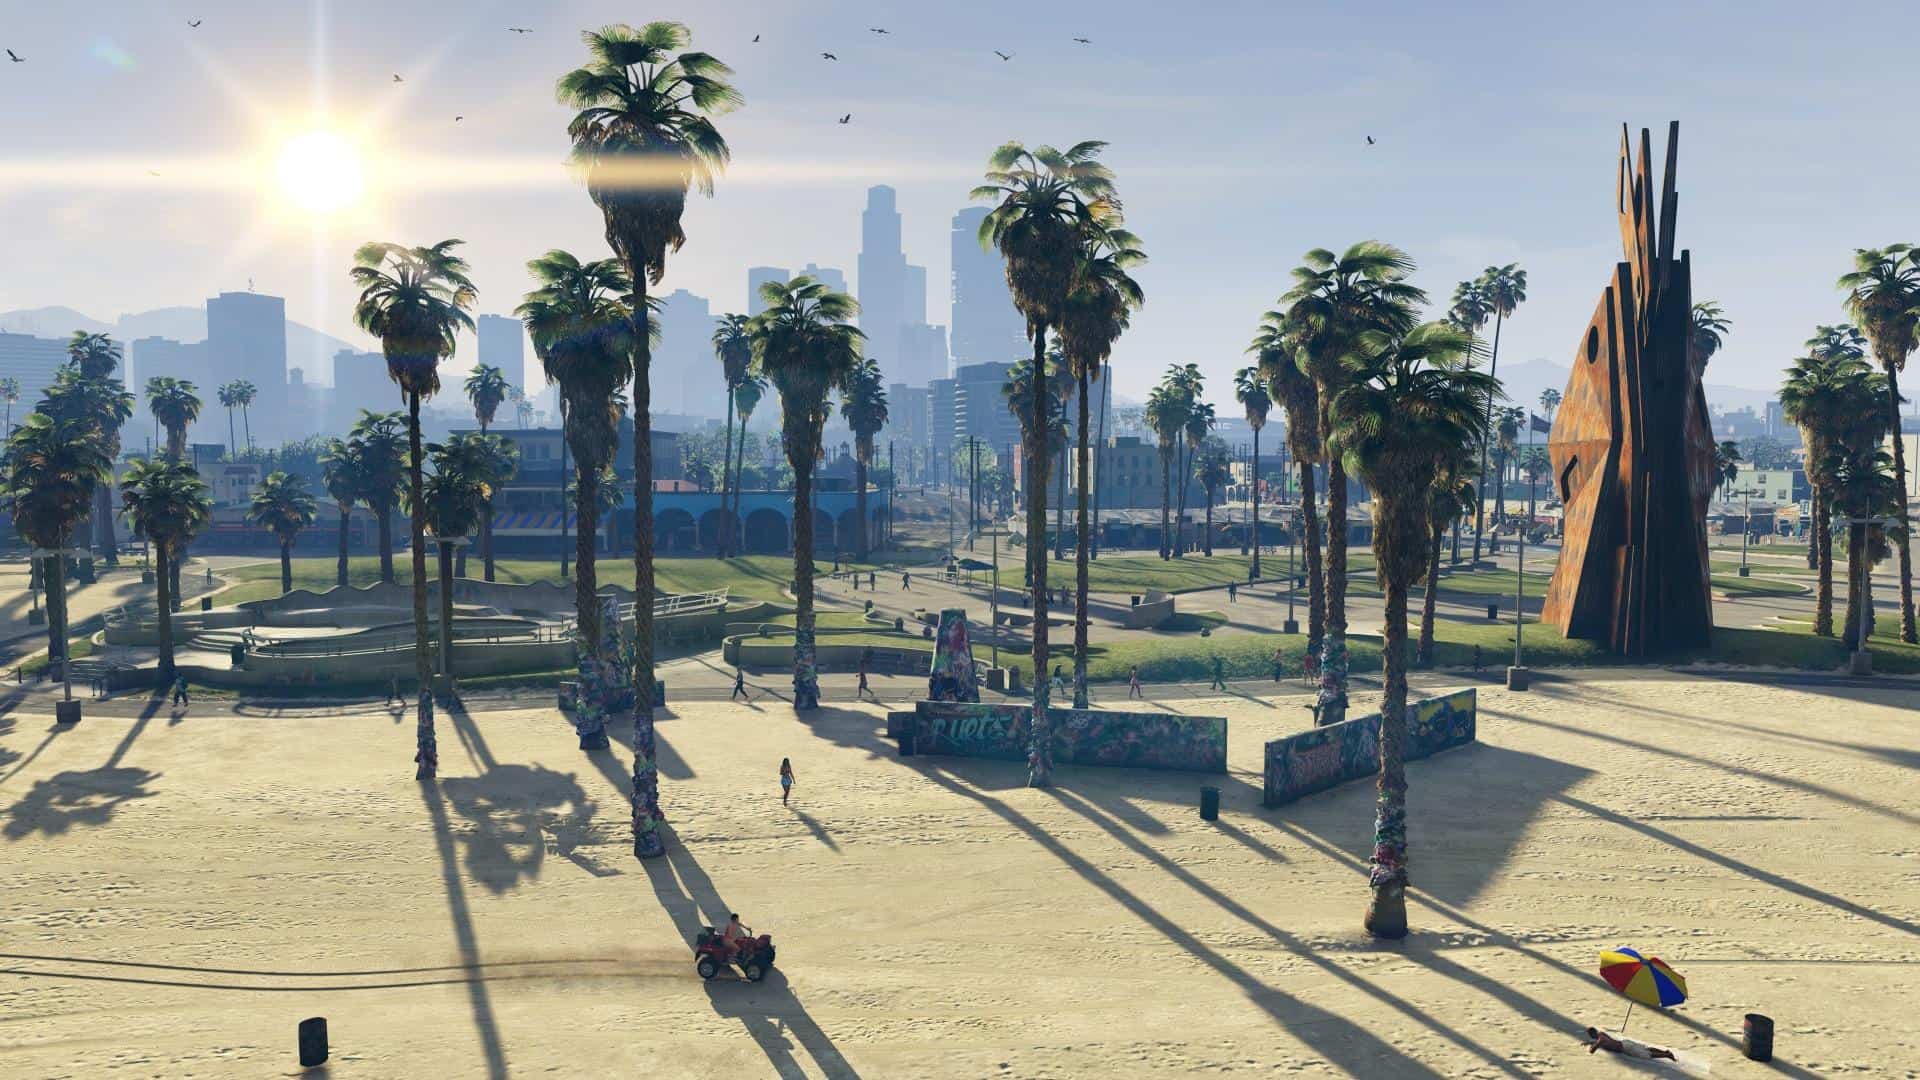 Beach in Grand Theft Auto V.